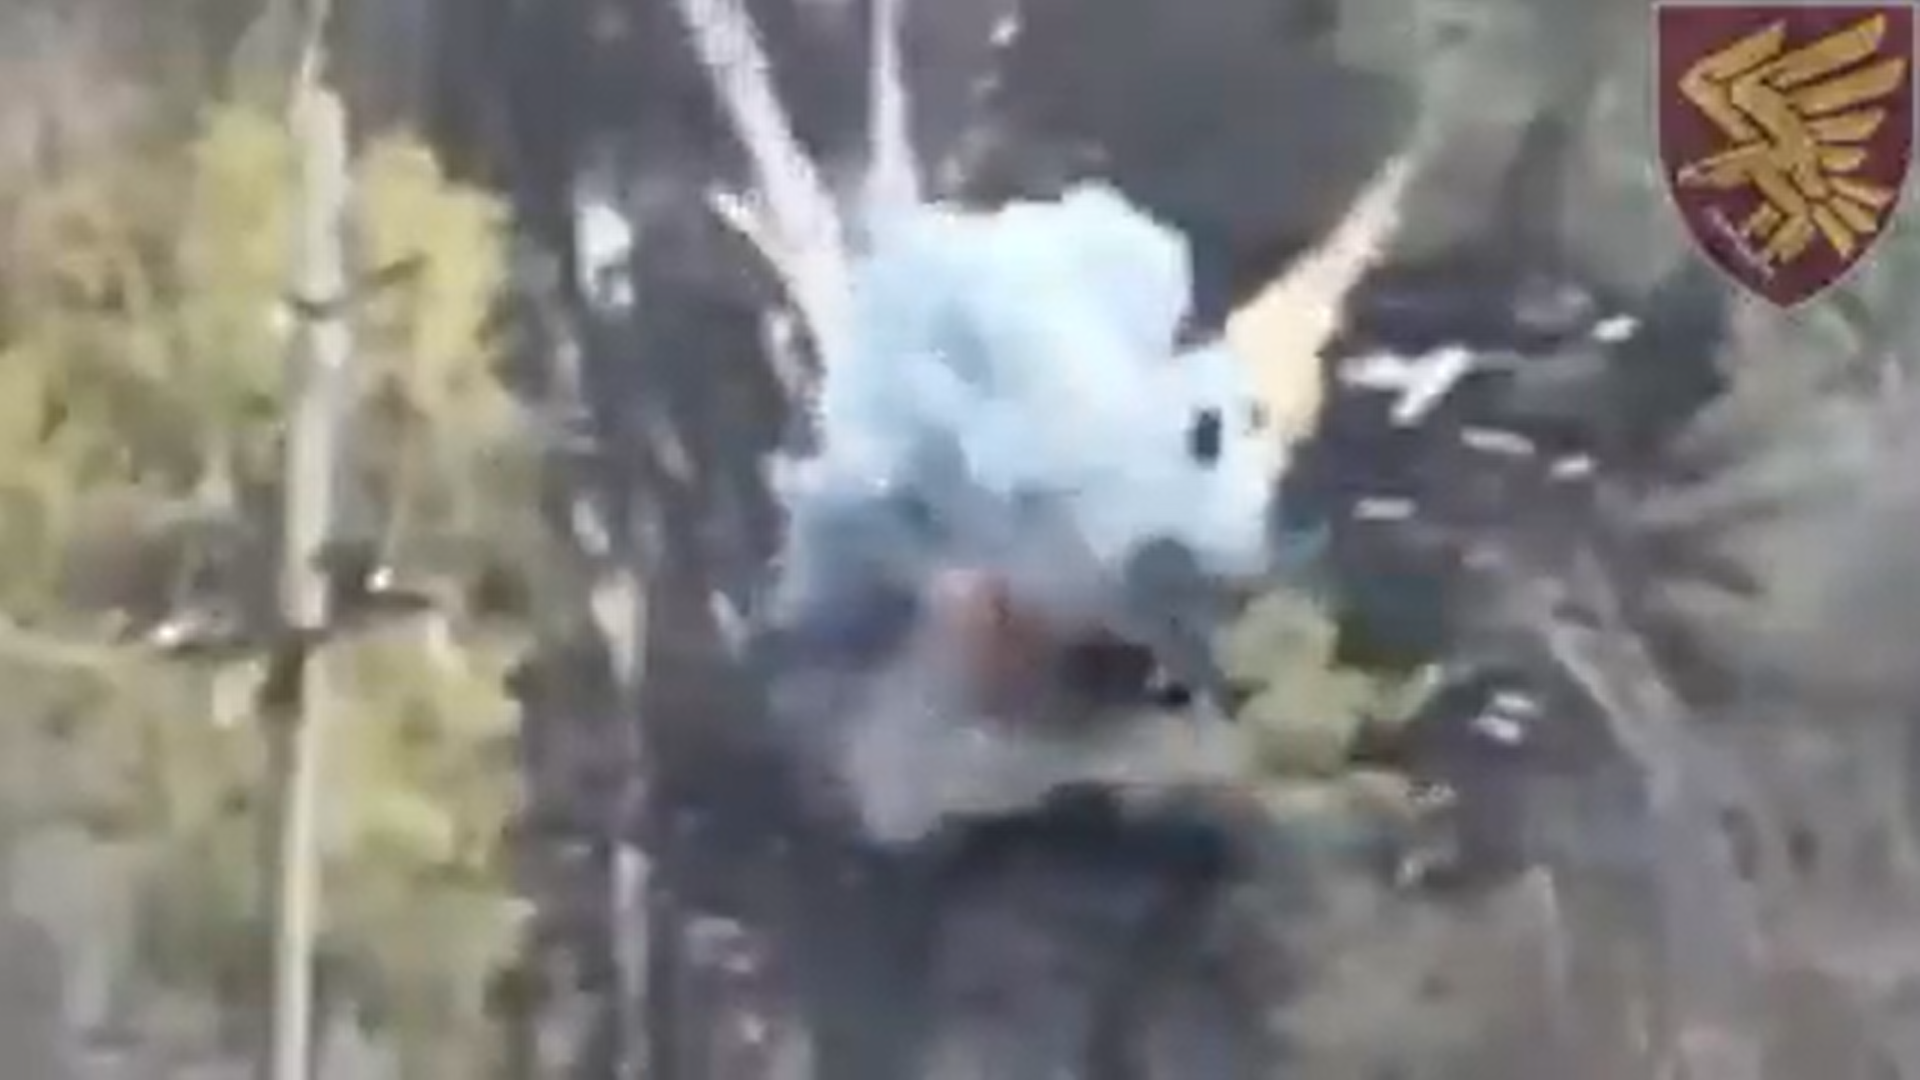 Nevjerovatan snimak drona prikazuje kako ukrajinski vojnik s male udaljenosti uništava ruski tenk fotografija iz zraka vidi se eksplozija tenka okolo šuma i blatnjav put u desnom gornjem uglu grb ukrajinske brigade